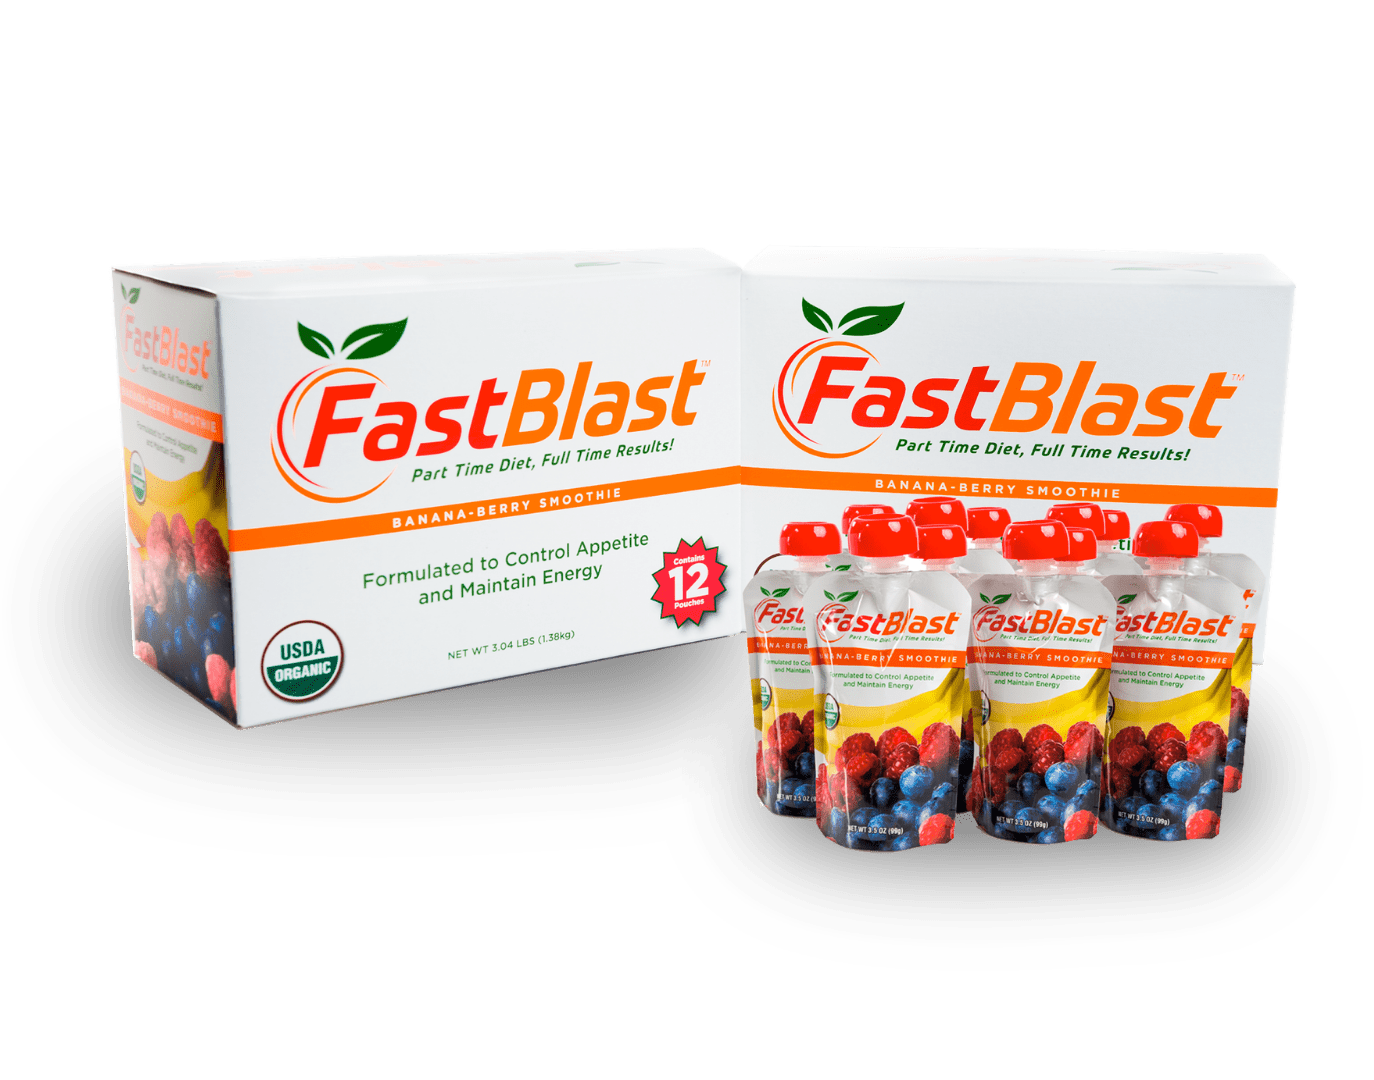 Fastblast smoothie two week trial